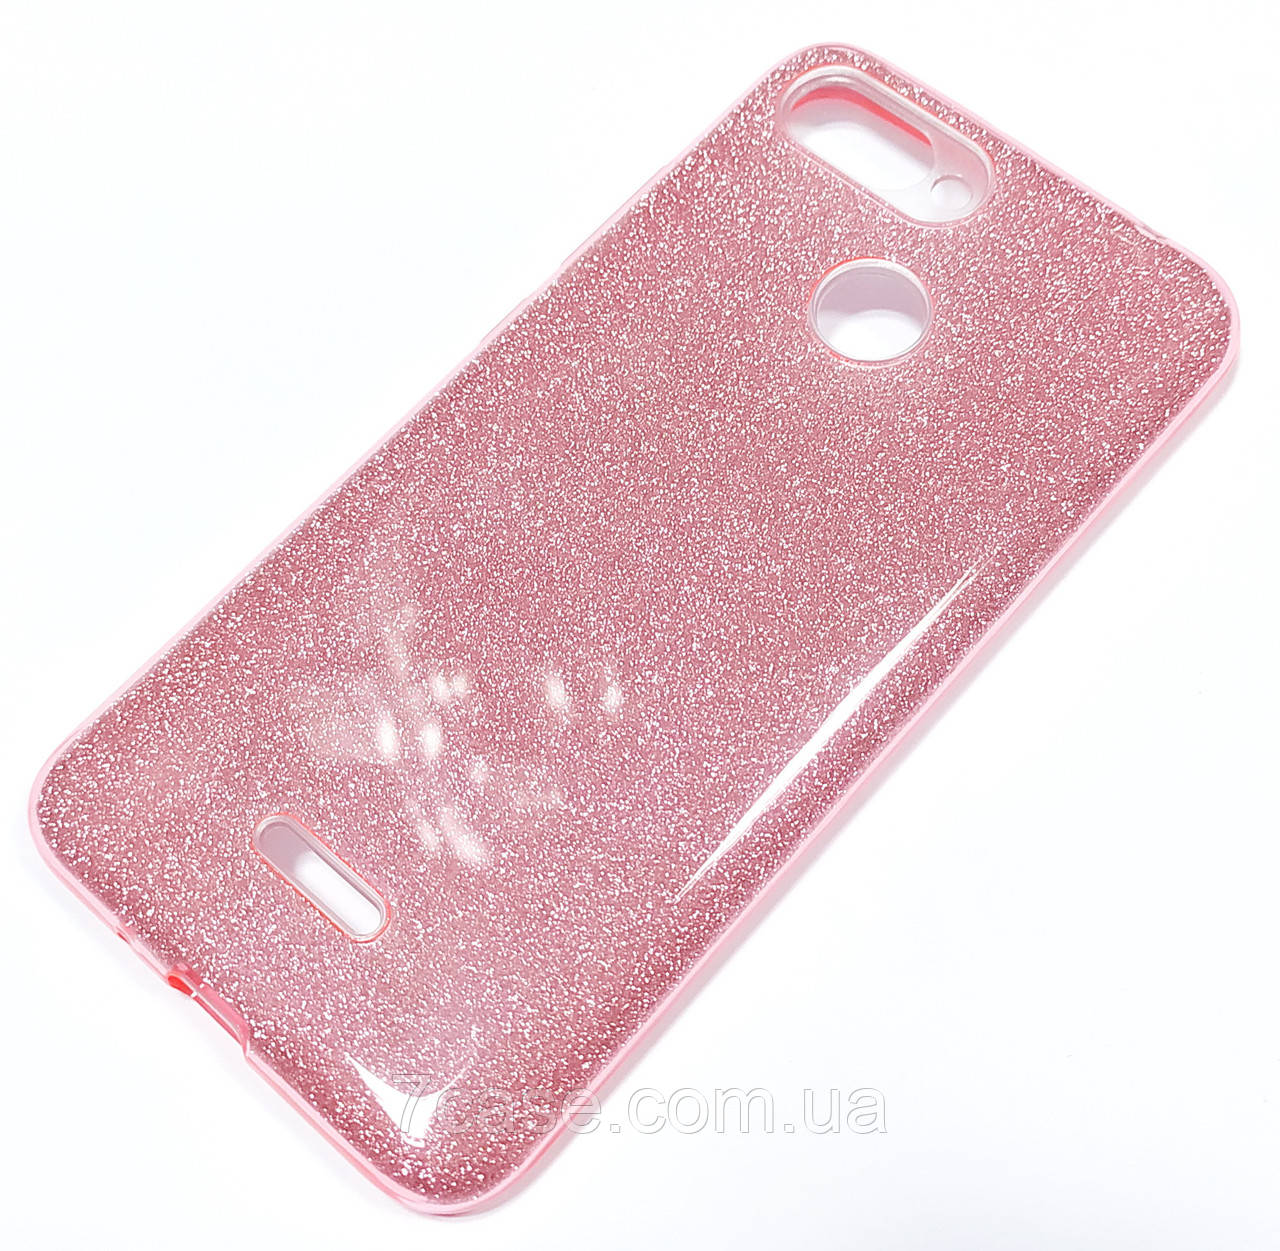 

Чехол силиконовый Shiny с блестками для Xiaomi Redmi 6 Розовый